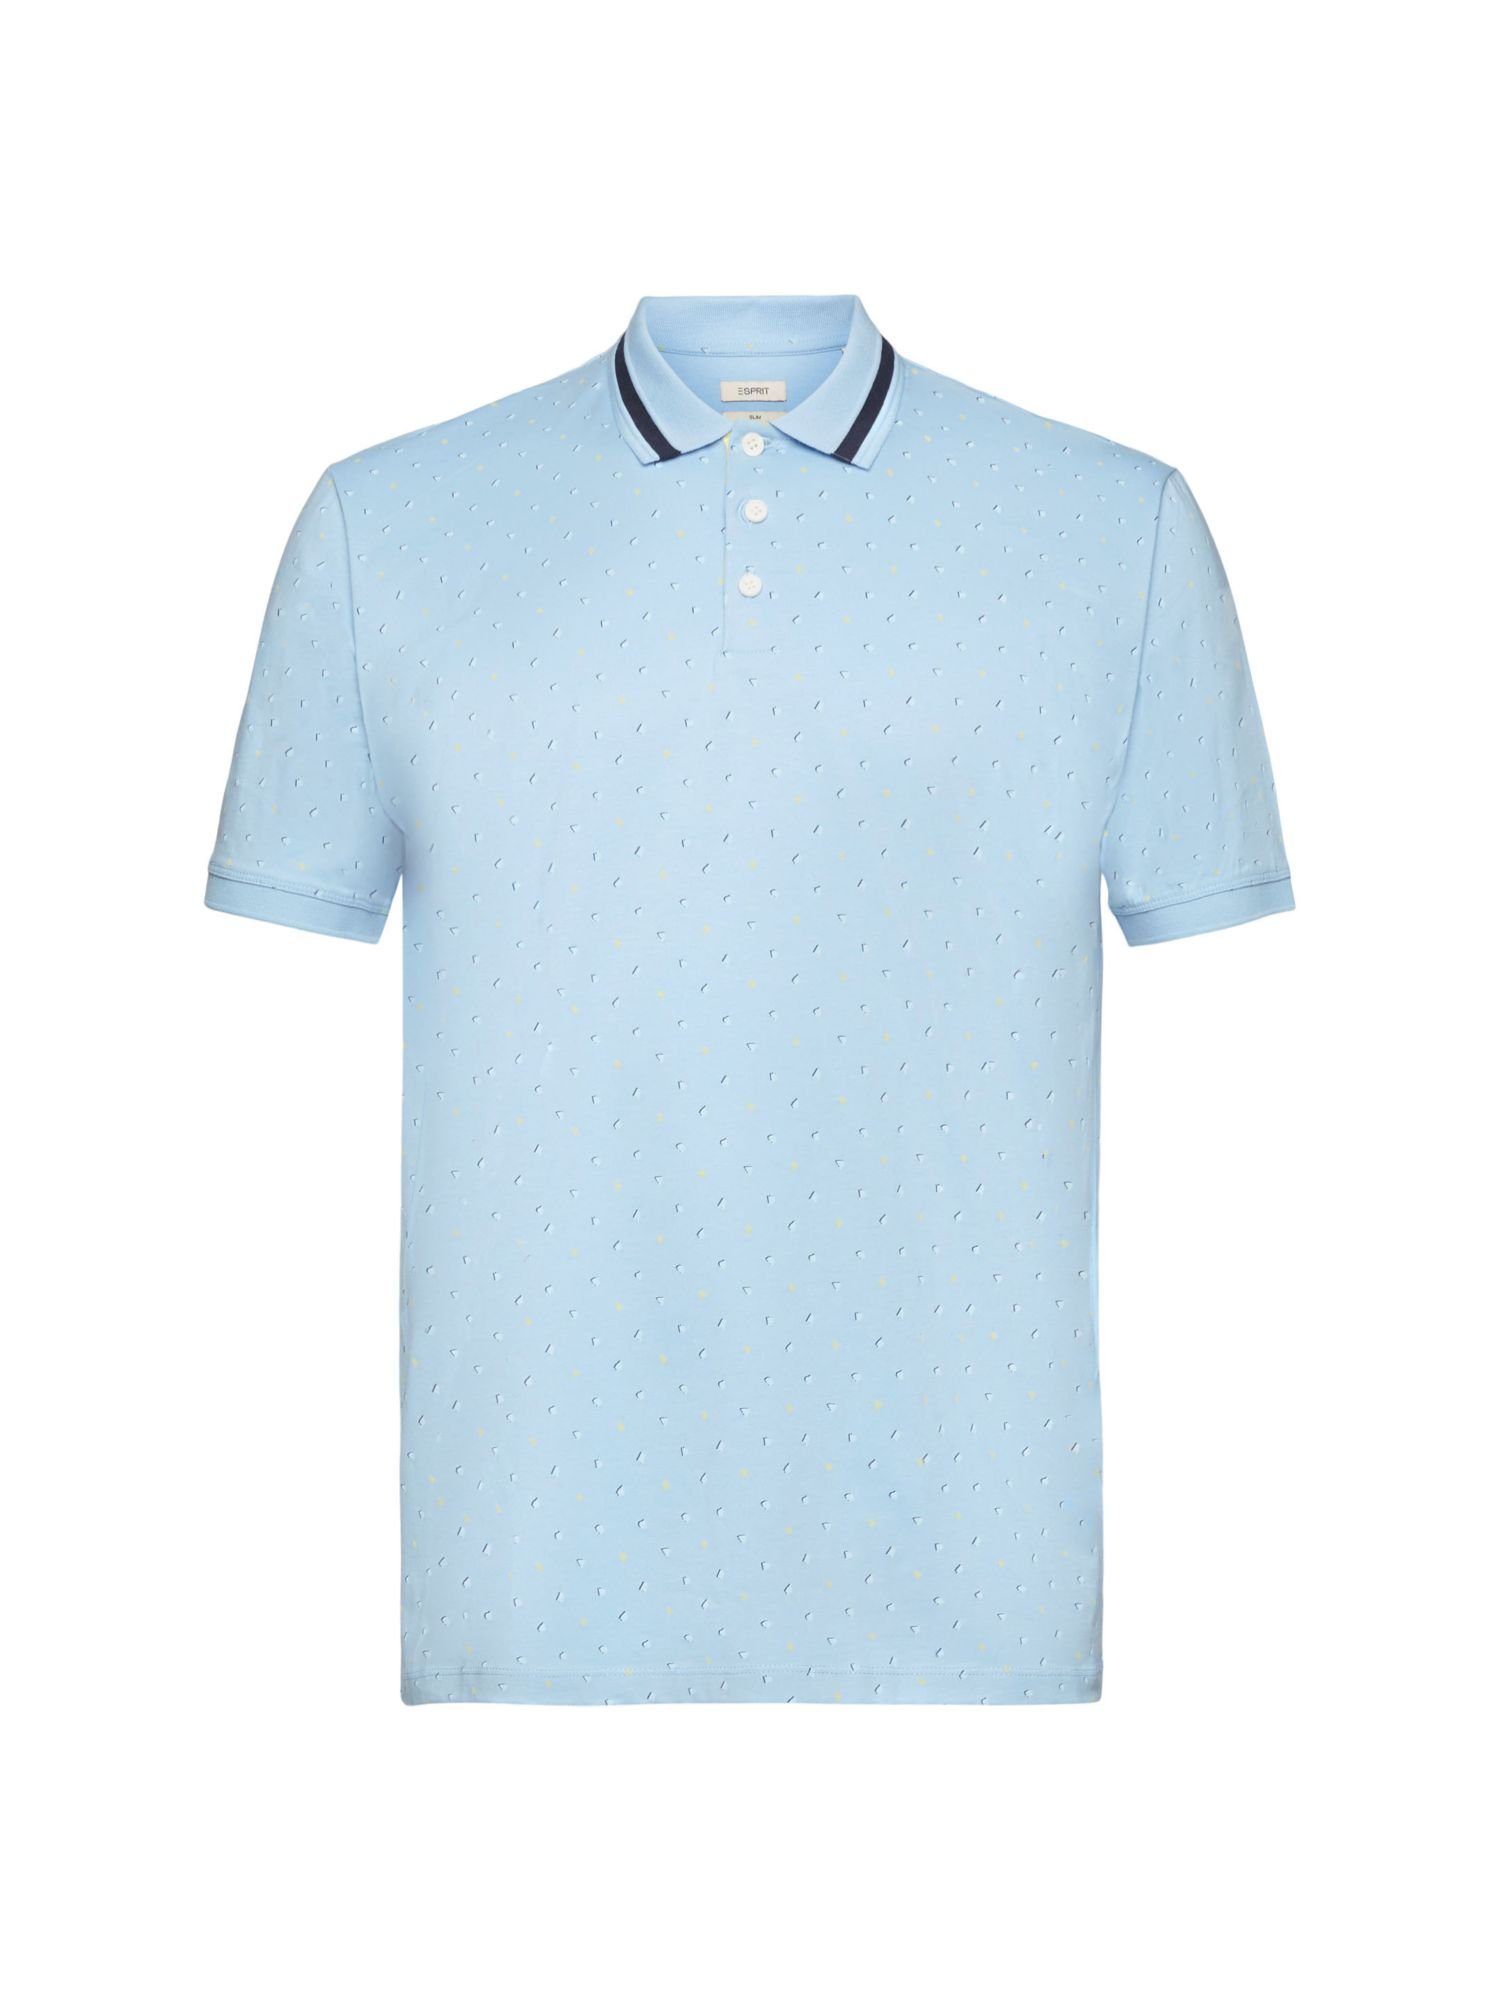 Esprit Poloshirt Poloshirt mit LIGHT BLUE Allover-Muster AQUA